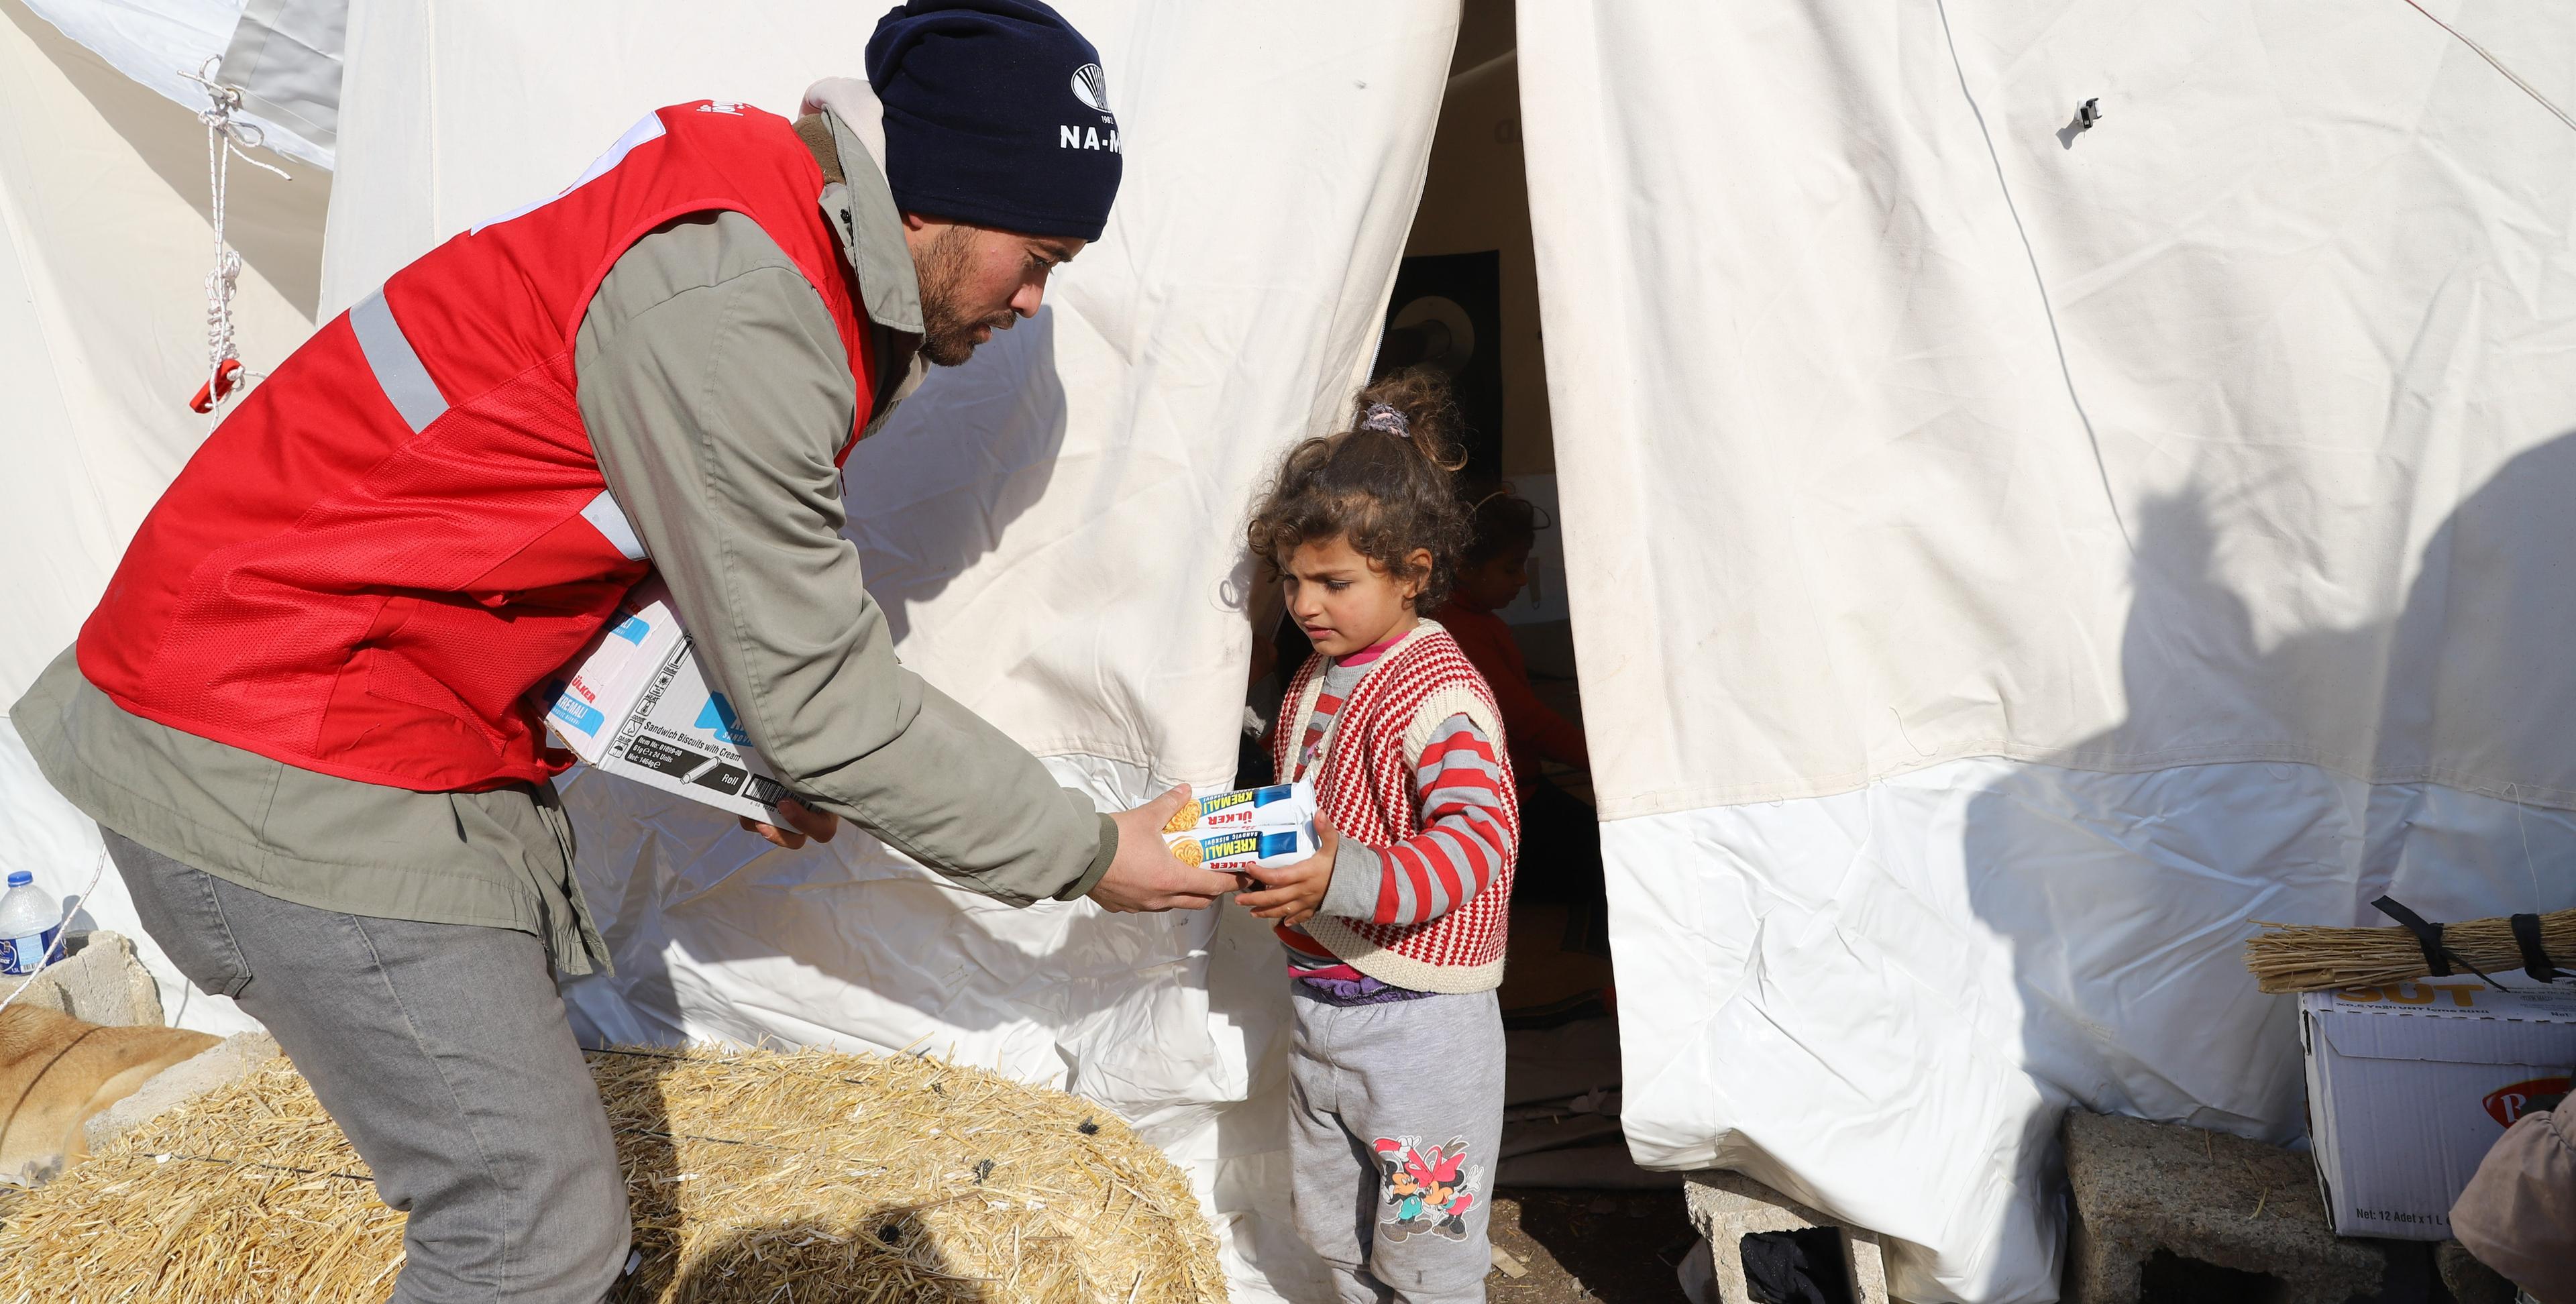 Un volontario della Croce Rossa porge del cibo a un bambino davanti alla tenda.